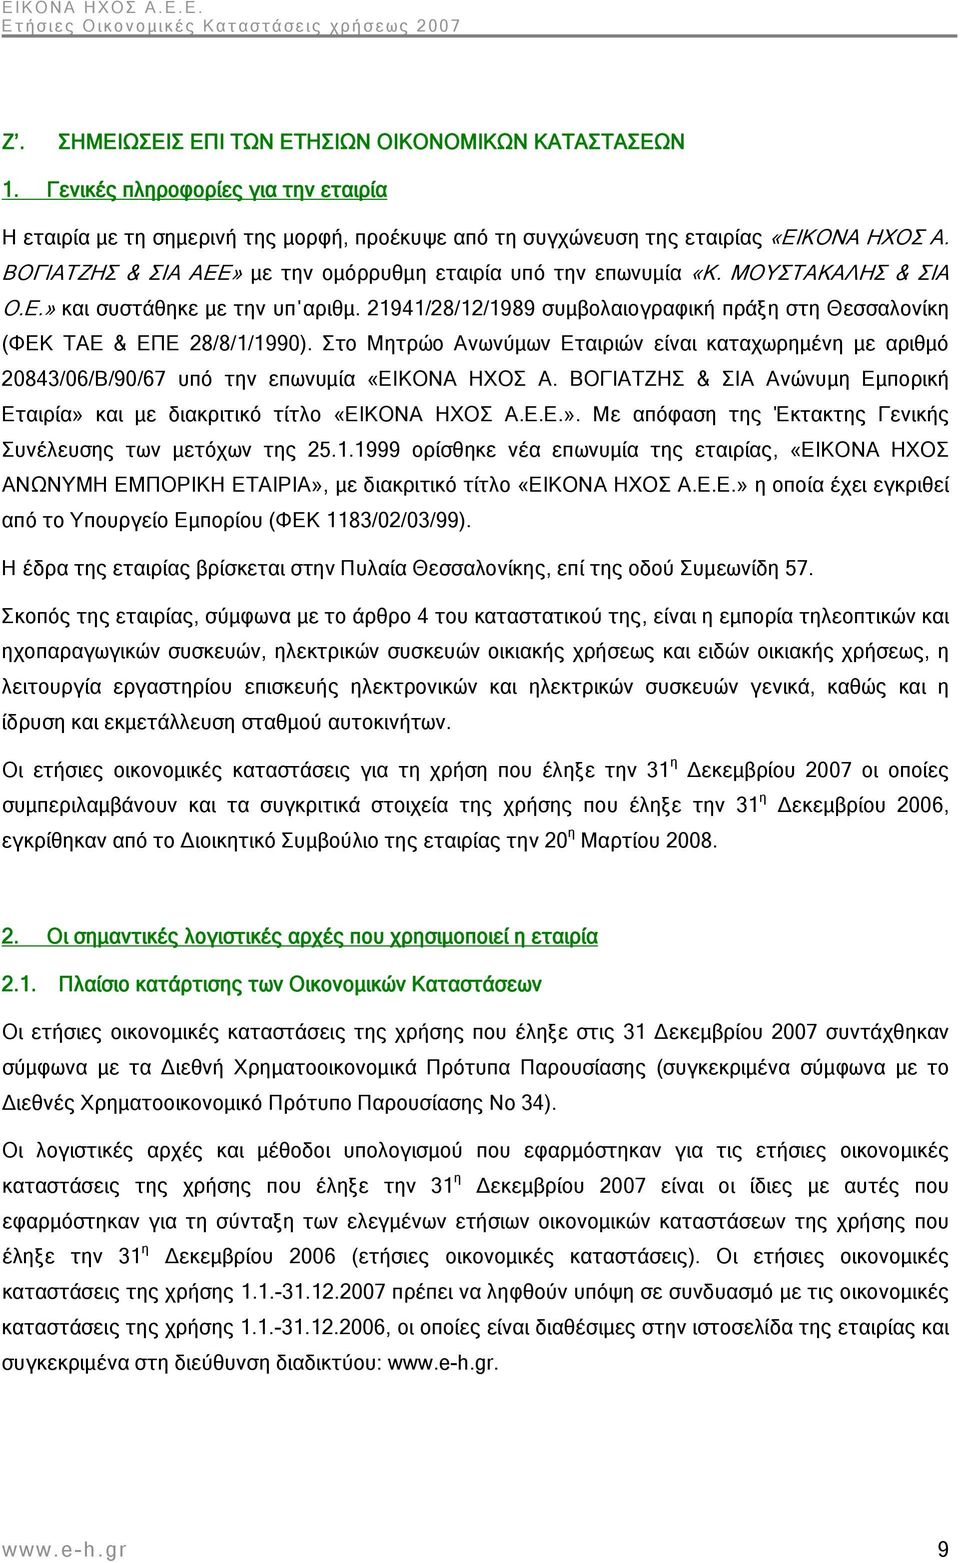 21941/28/12/1989 συμβολαιογραφική πράξη στη Θεσσαλονίκη (ΦΕΚ ΤΑΕ & ΕΠΕ 28/8/1/1990). Στο Μητρώο Ανωνύμων Εταιριών είναι καταχωρημένη με αριθμό 20843/06/Β/90/67 υπό την επωνυμία «ΕΙΚΟΝΑ ΗΧΟΣ Α.